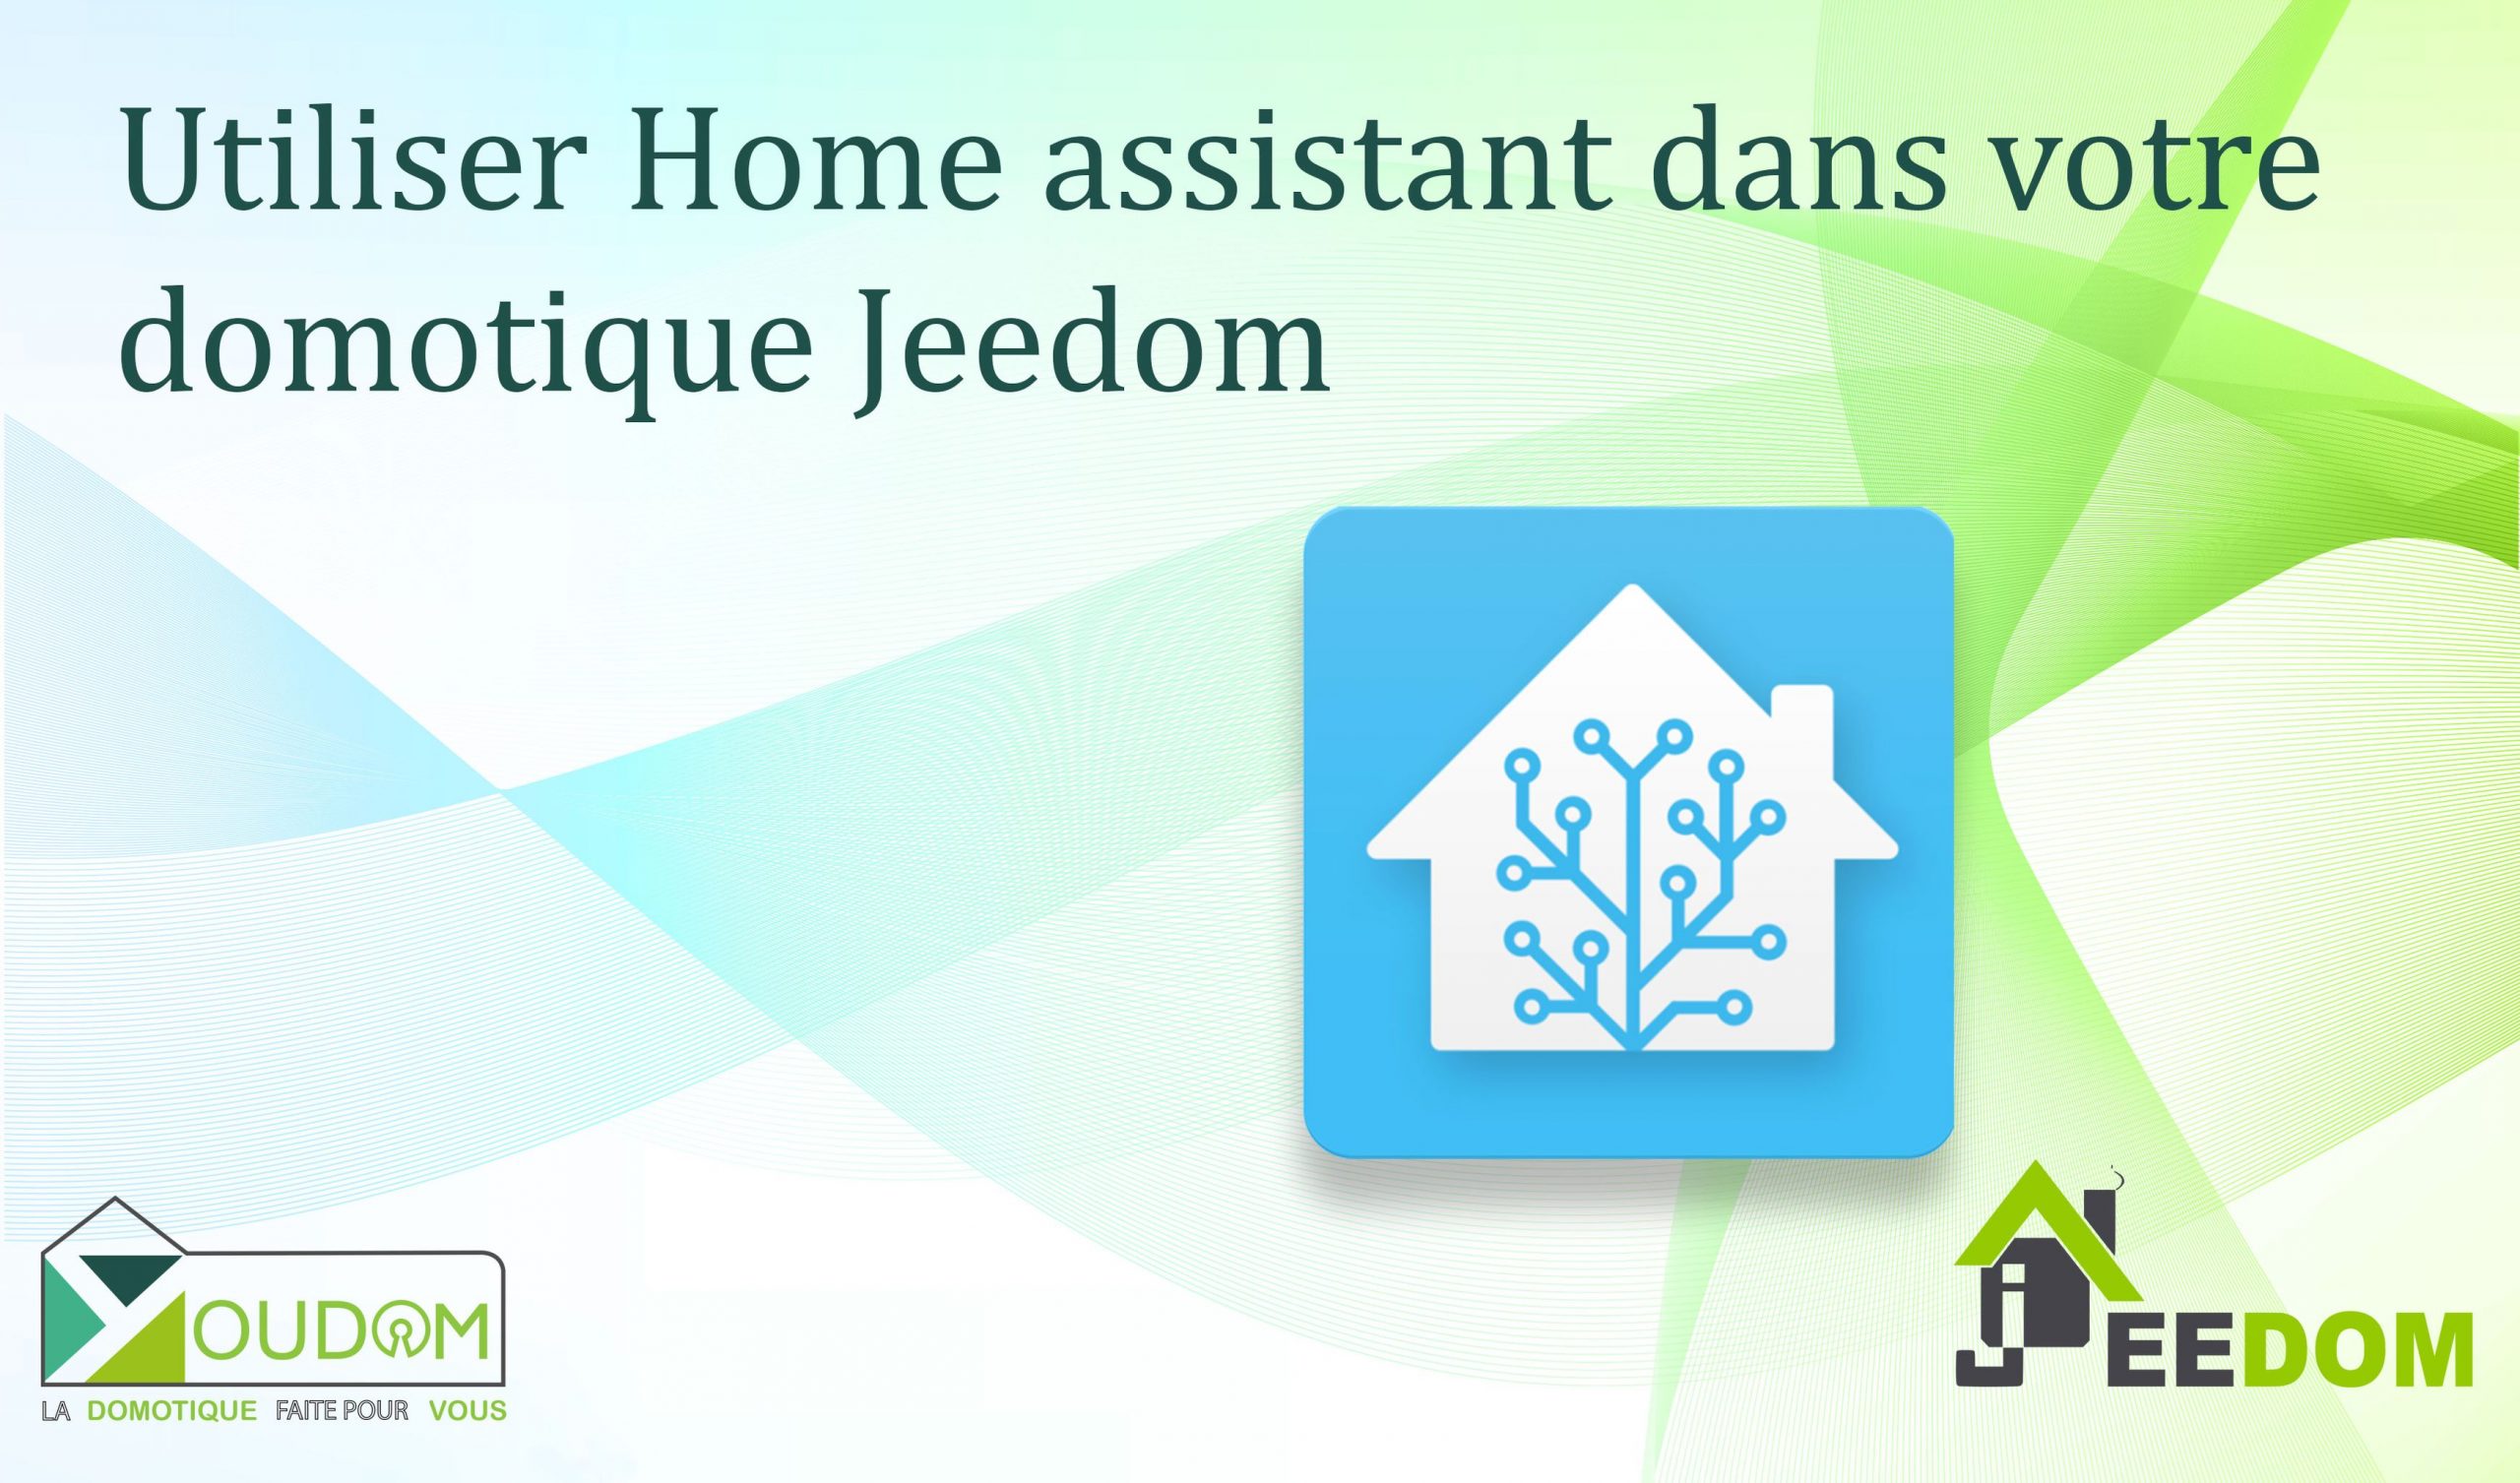 Lire la suite à propos de l’article Utiliser Home assistant dans votre domotique Jeedom